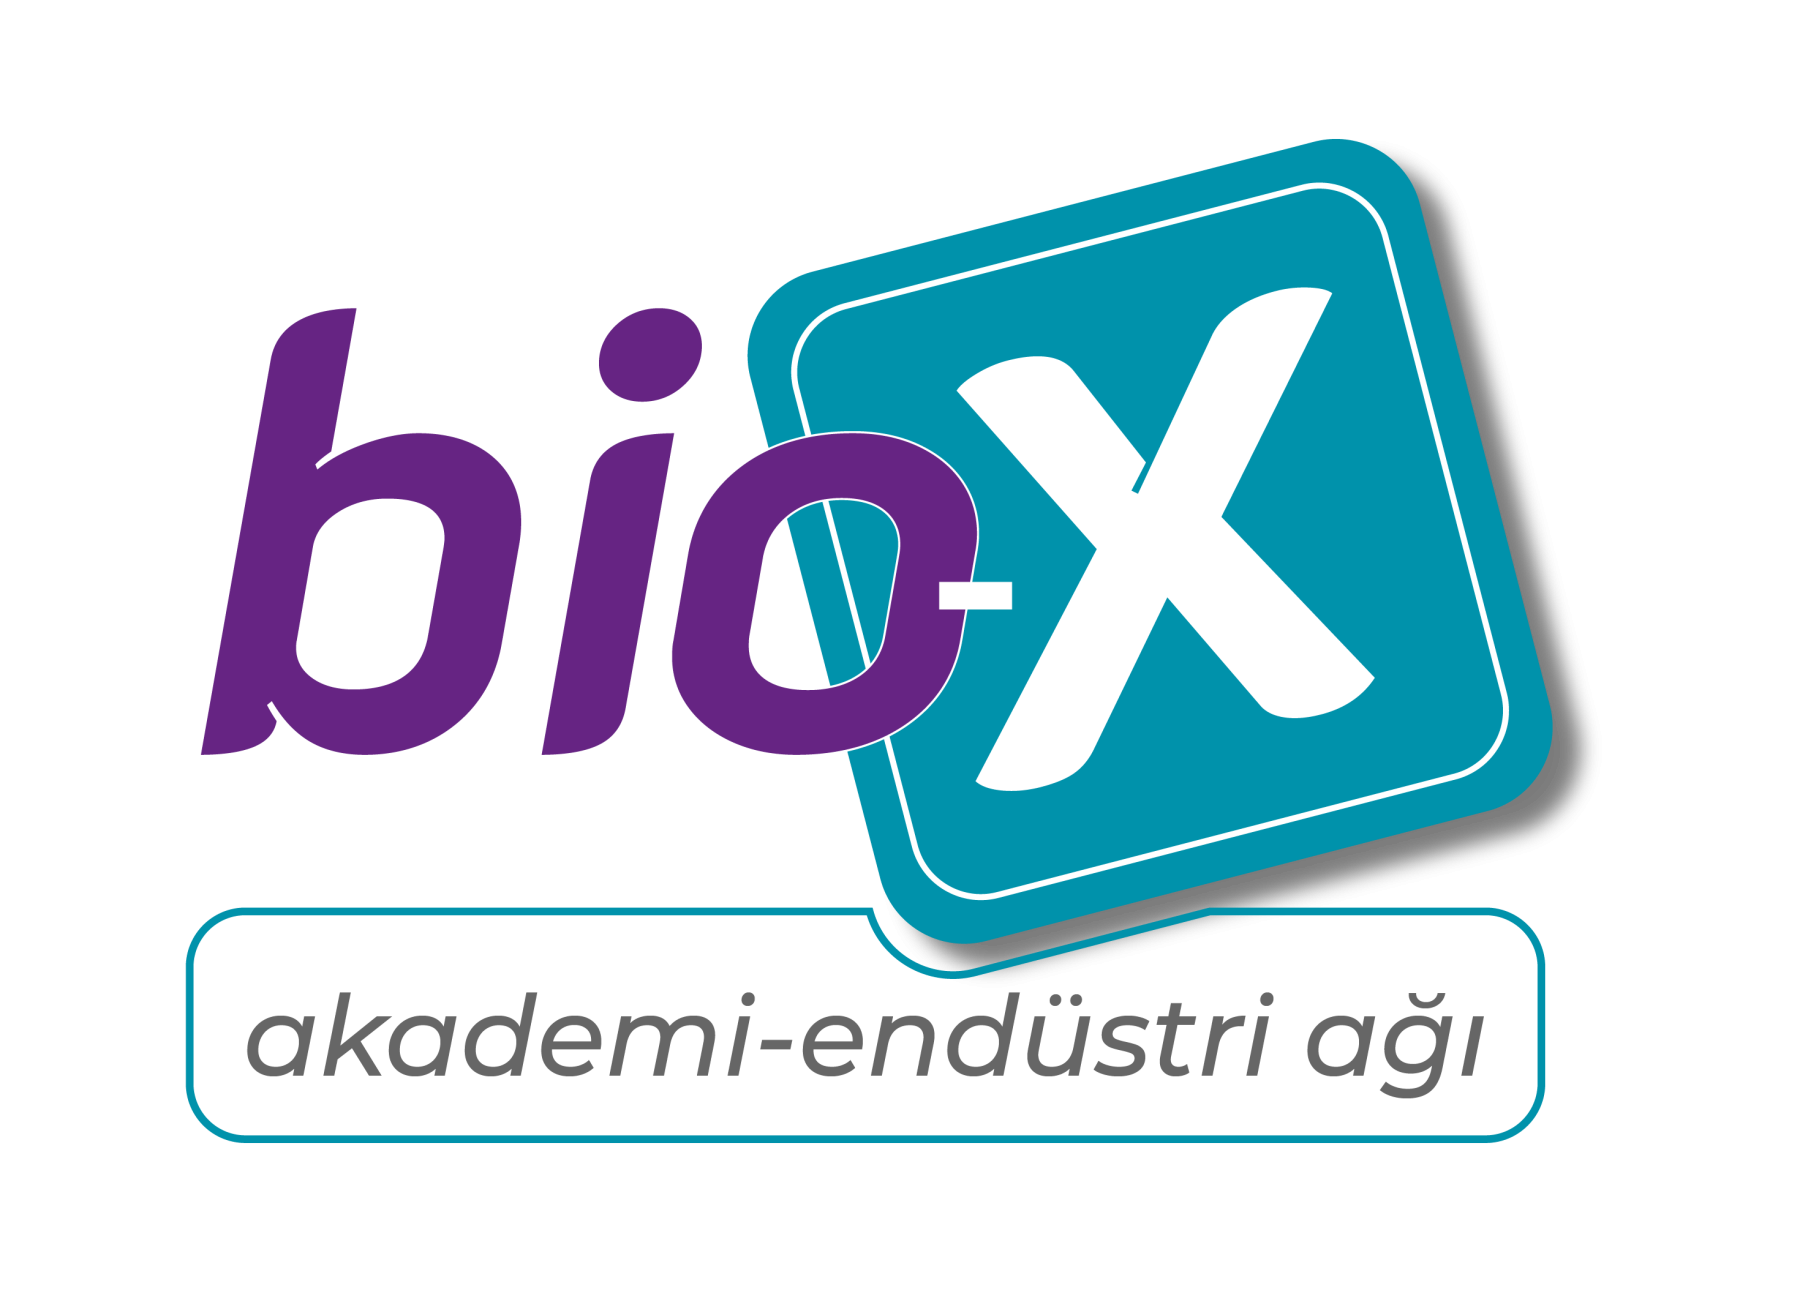 Bio-X "Akademi - Endüstri Ağı"